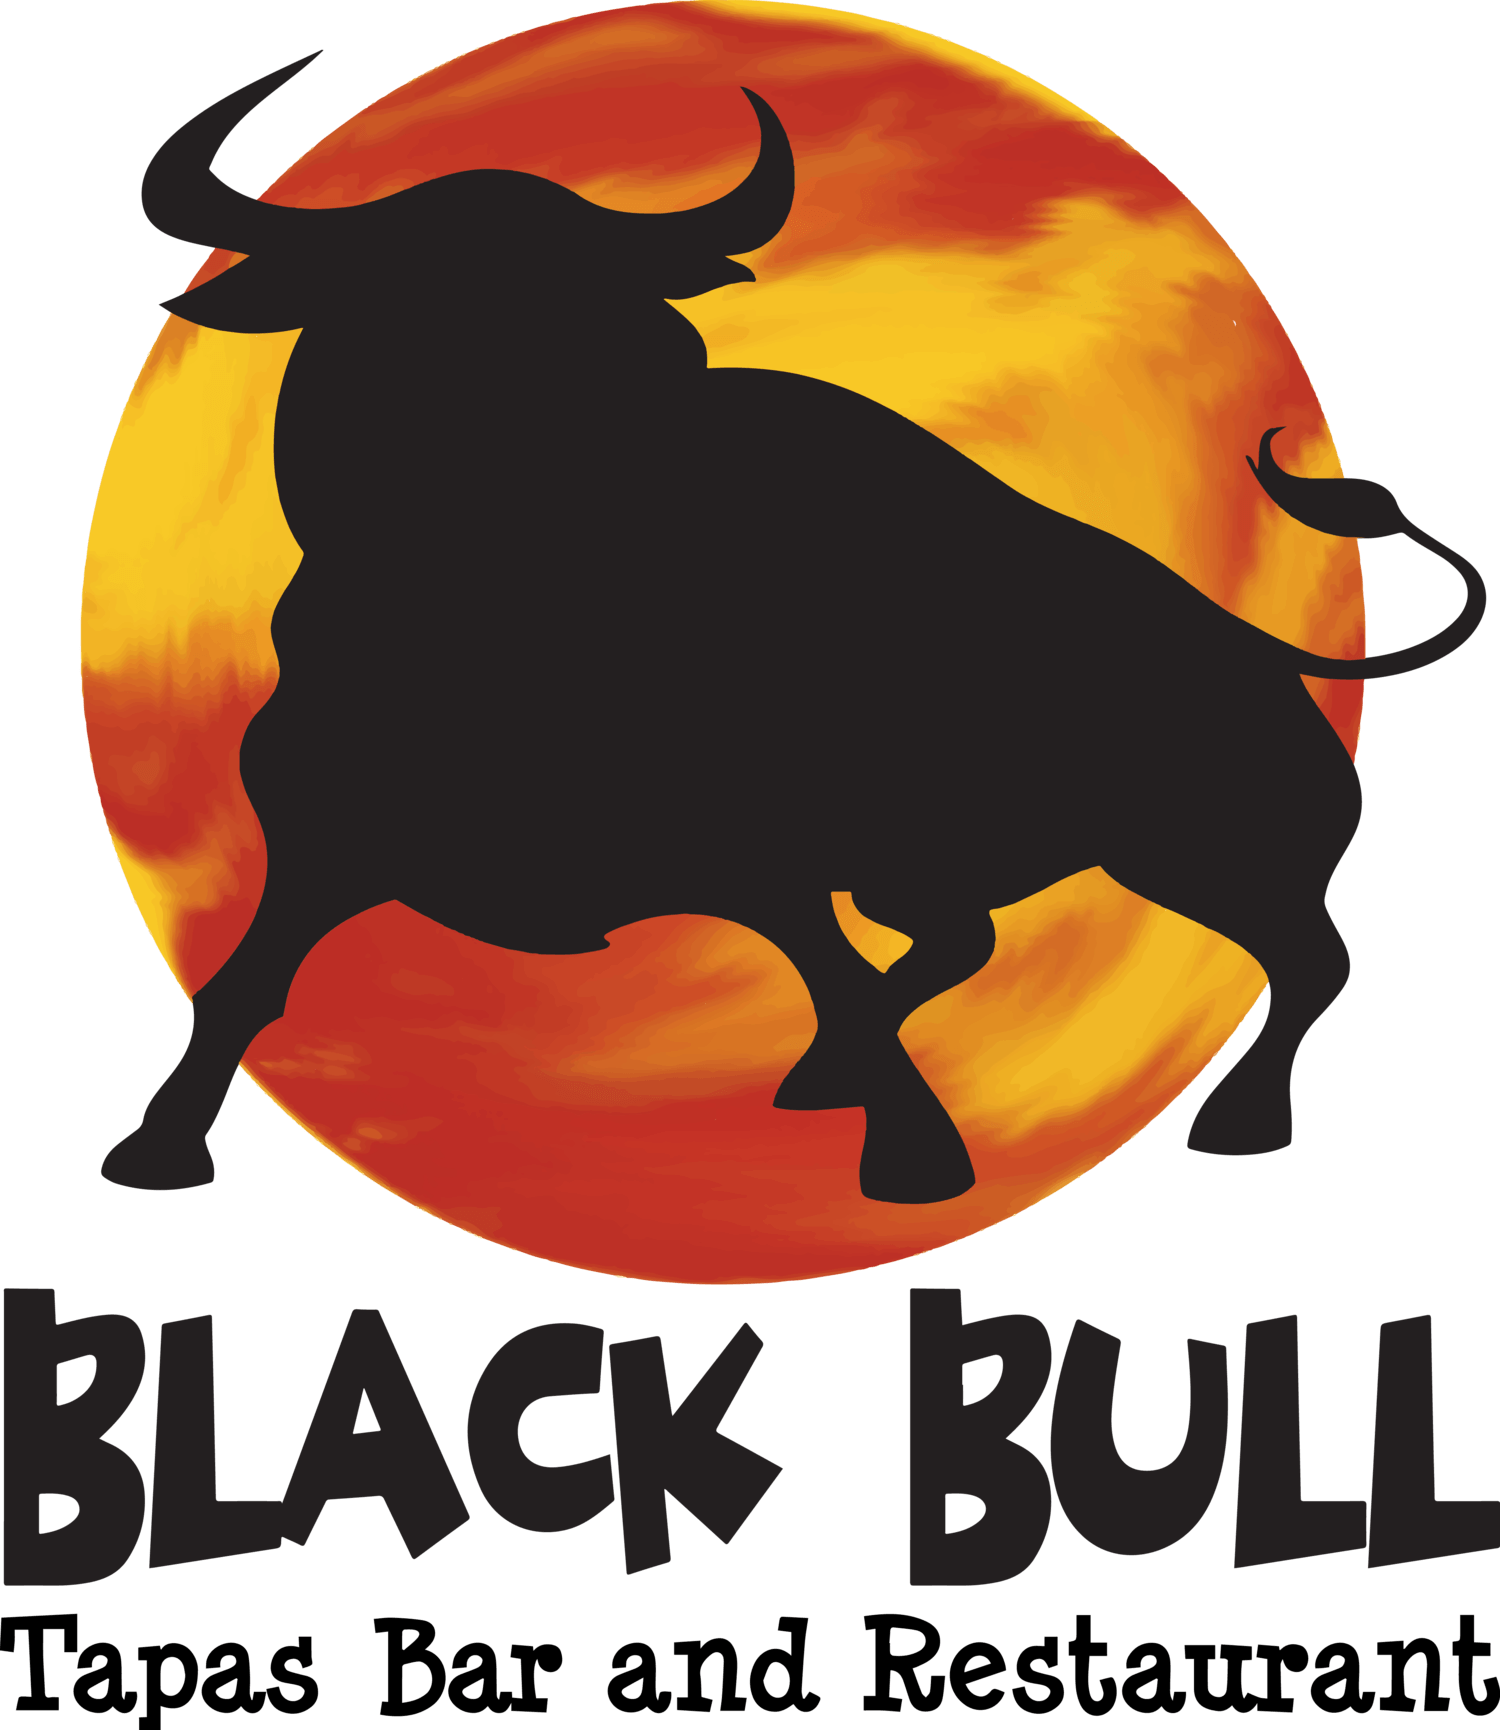 All-Black Bulls Logo - Black Bull Tapas Bar and Restaurant